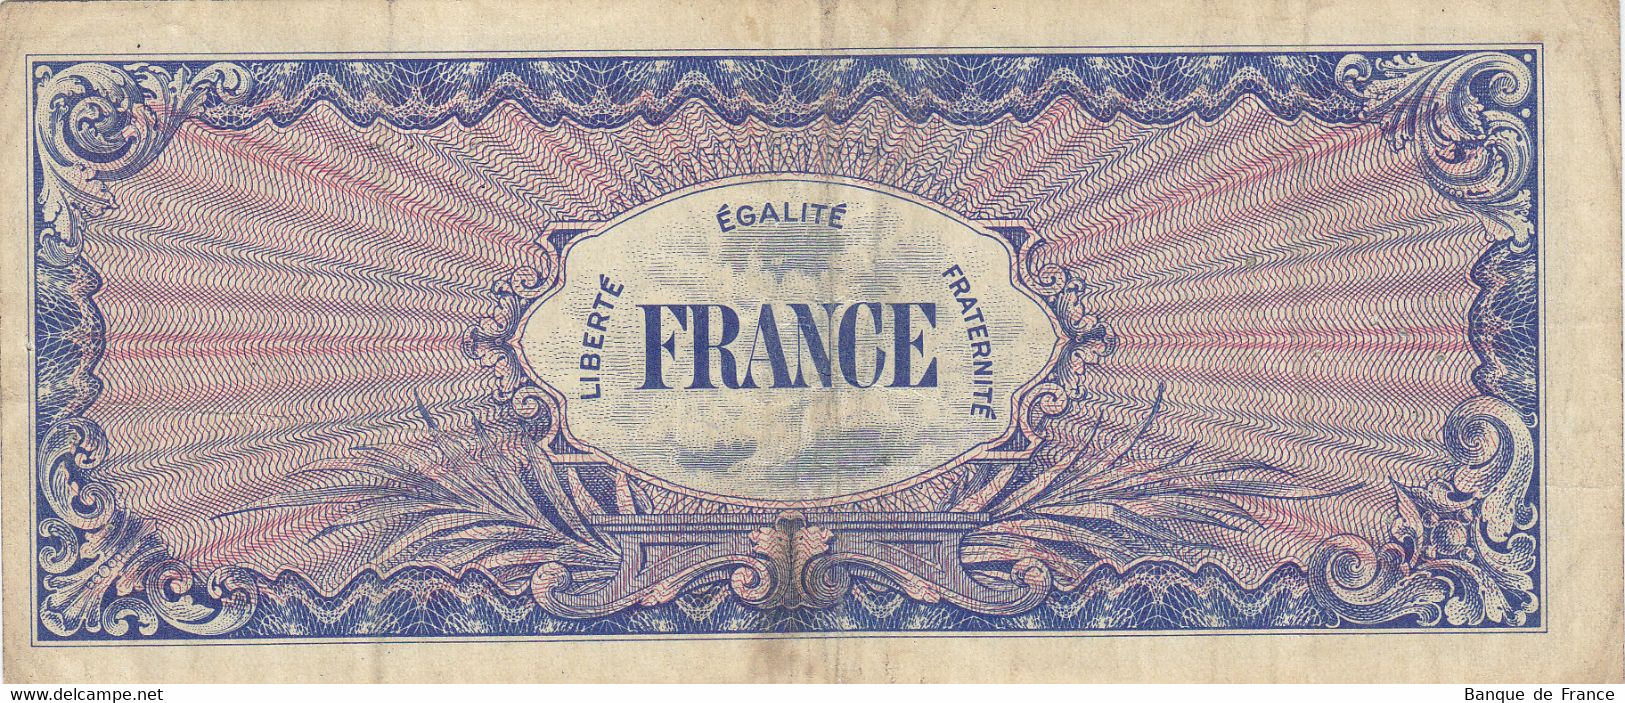 RARE Billet 100 F 1945 Verso France Série X FAY VF.25.11 N° 05299778 - 1945 Verso France